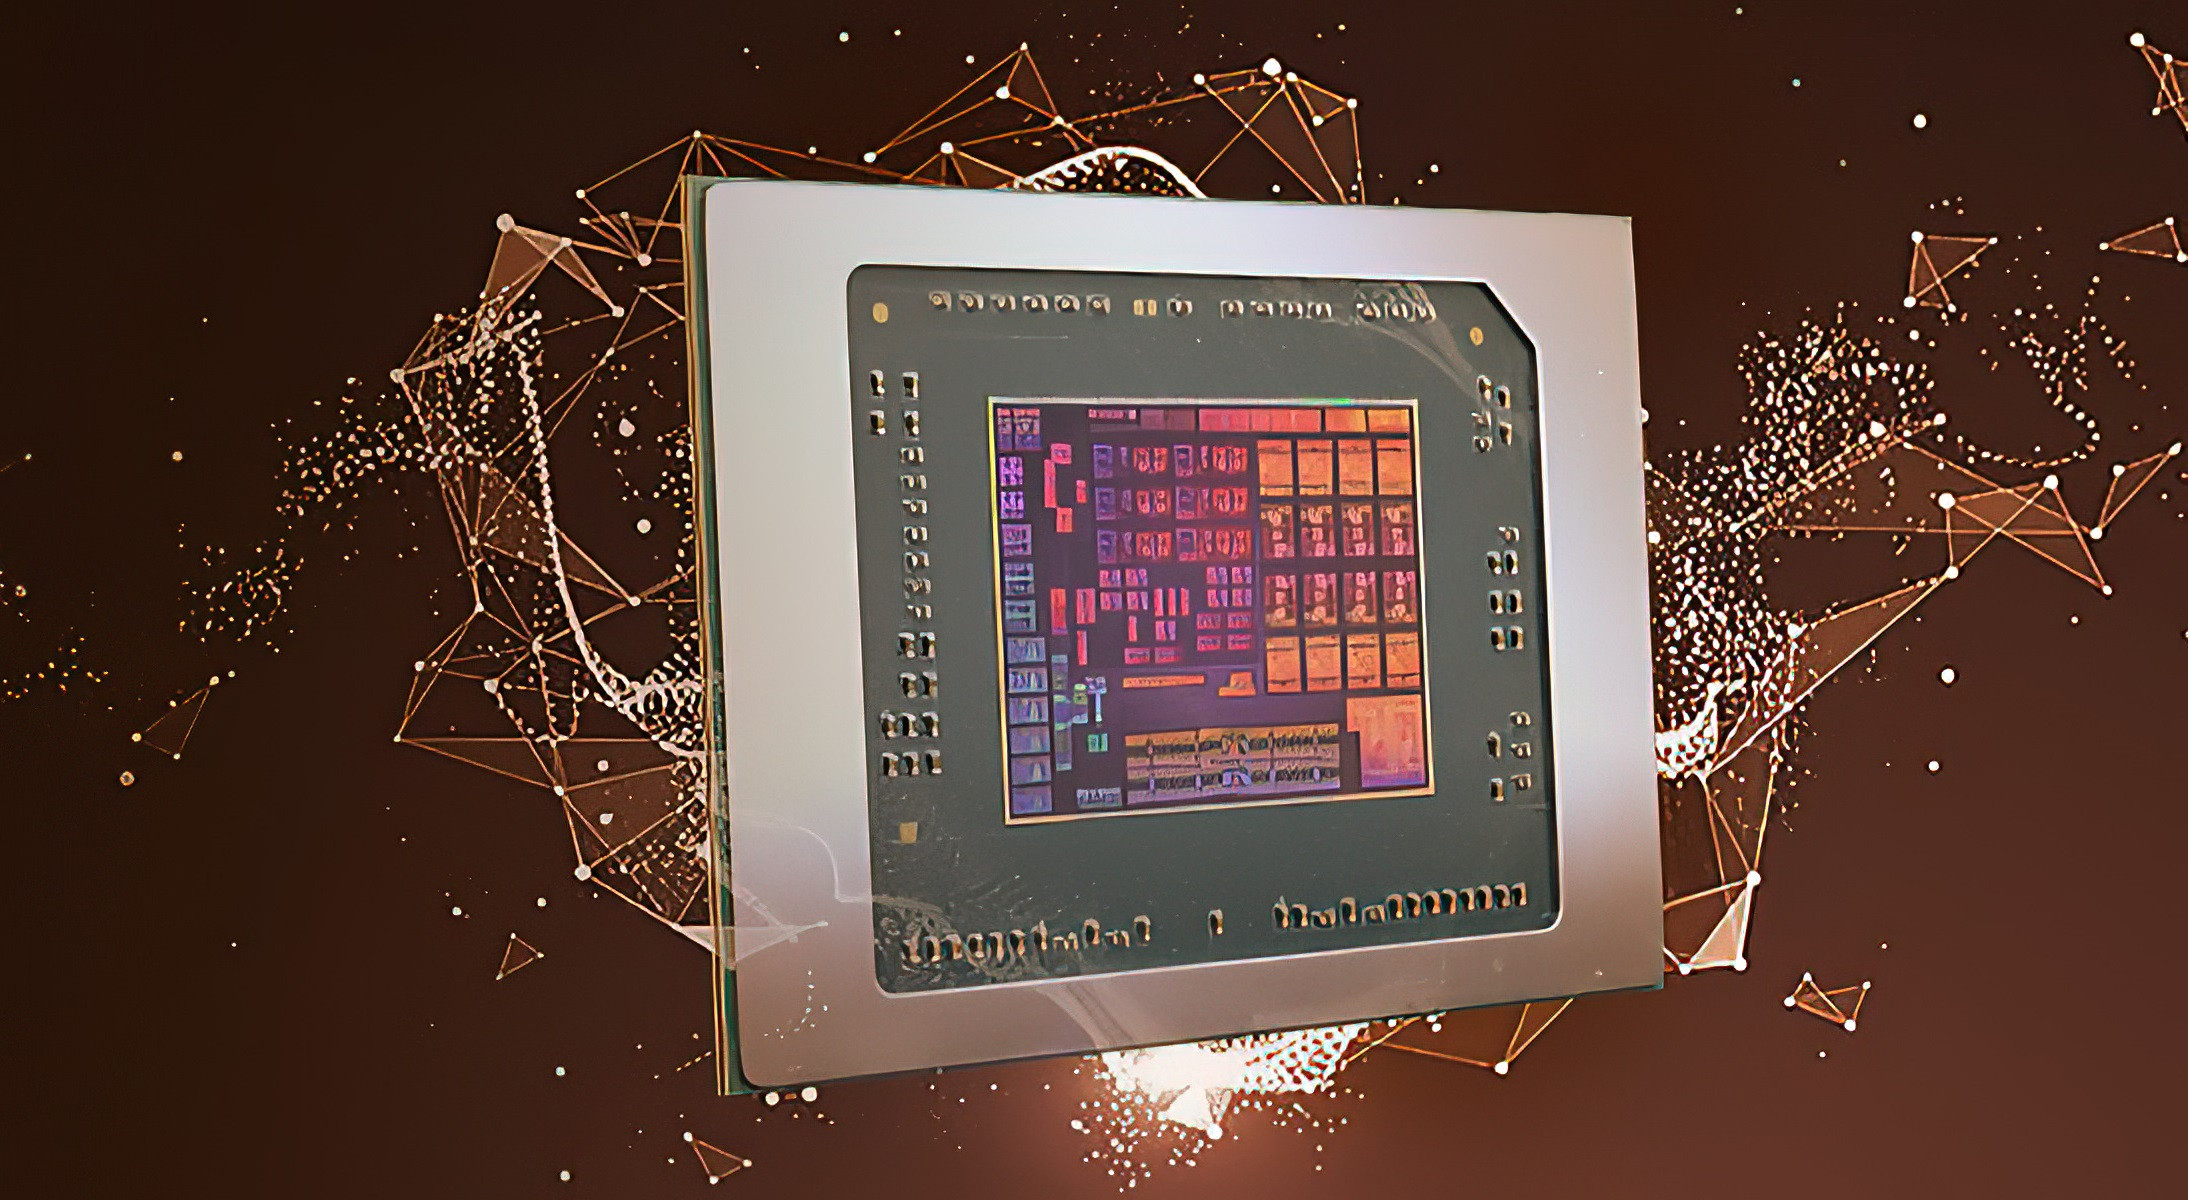 CPU Mobility hiệu suất cao 5nm Dragon Range “Zen 4” của AMD sẽ mang lại hiệu suất và hiệu quả vượt trội so với Zen 3